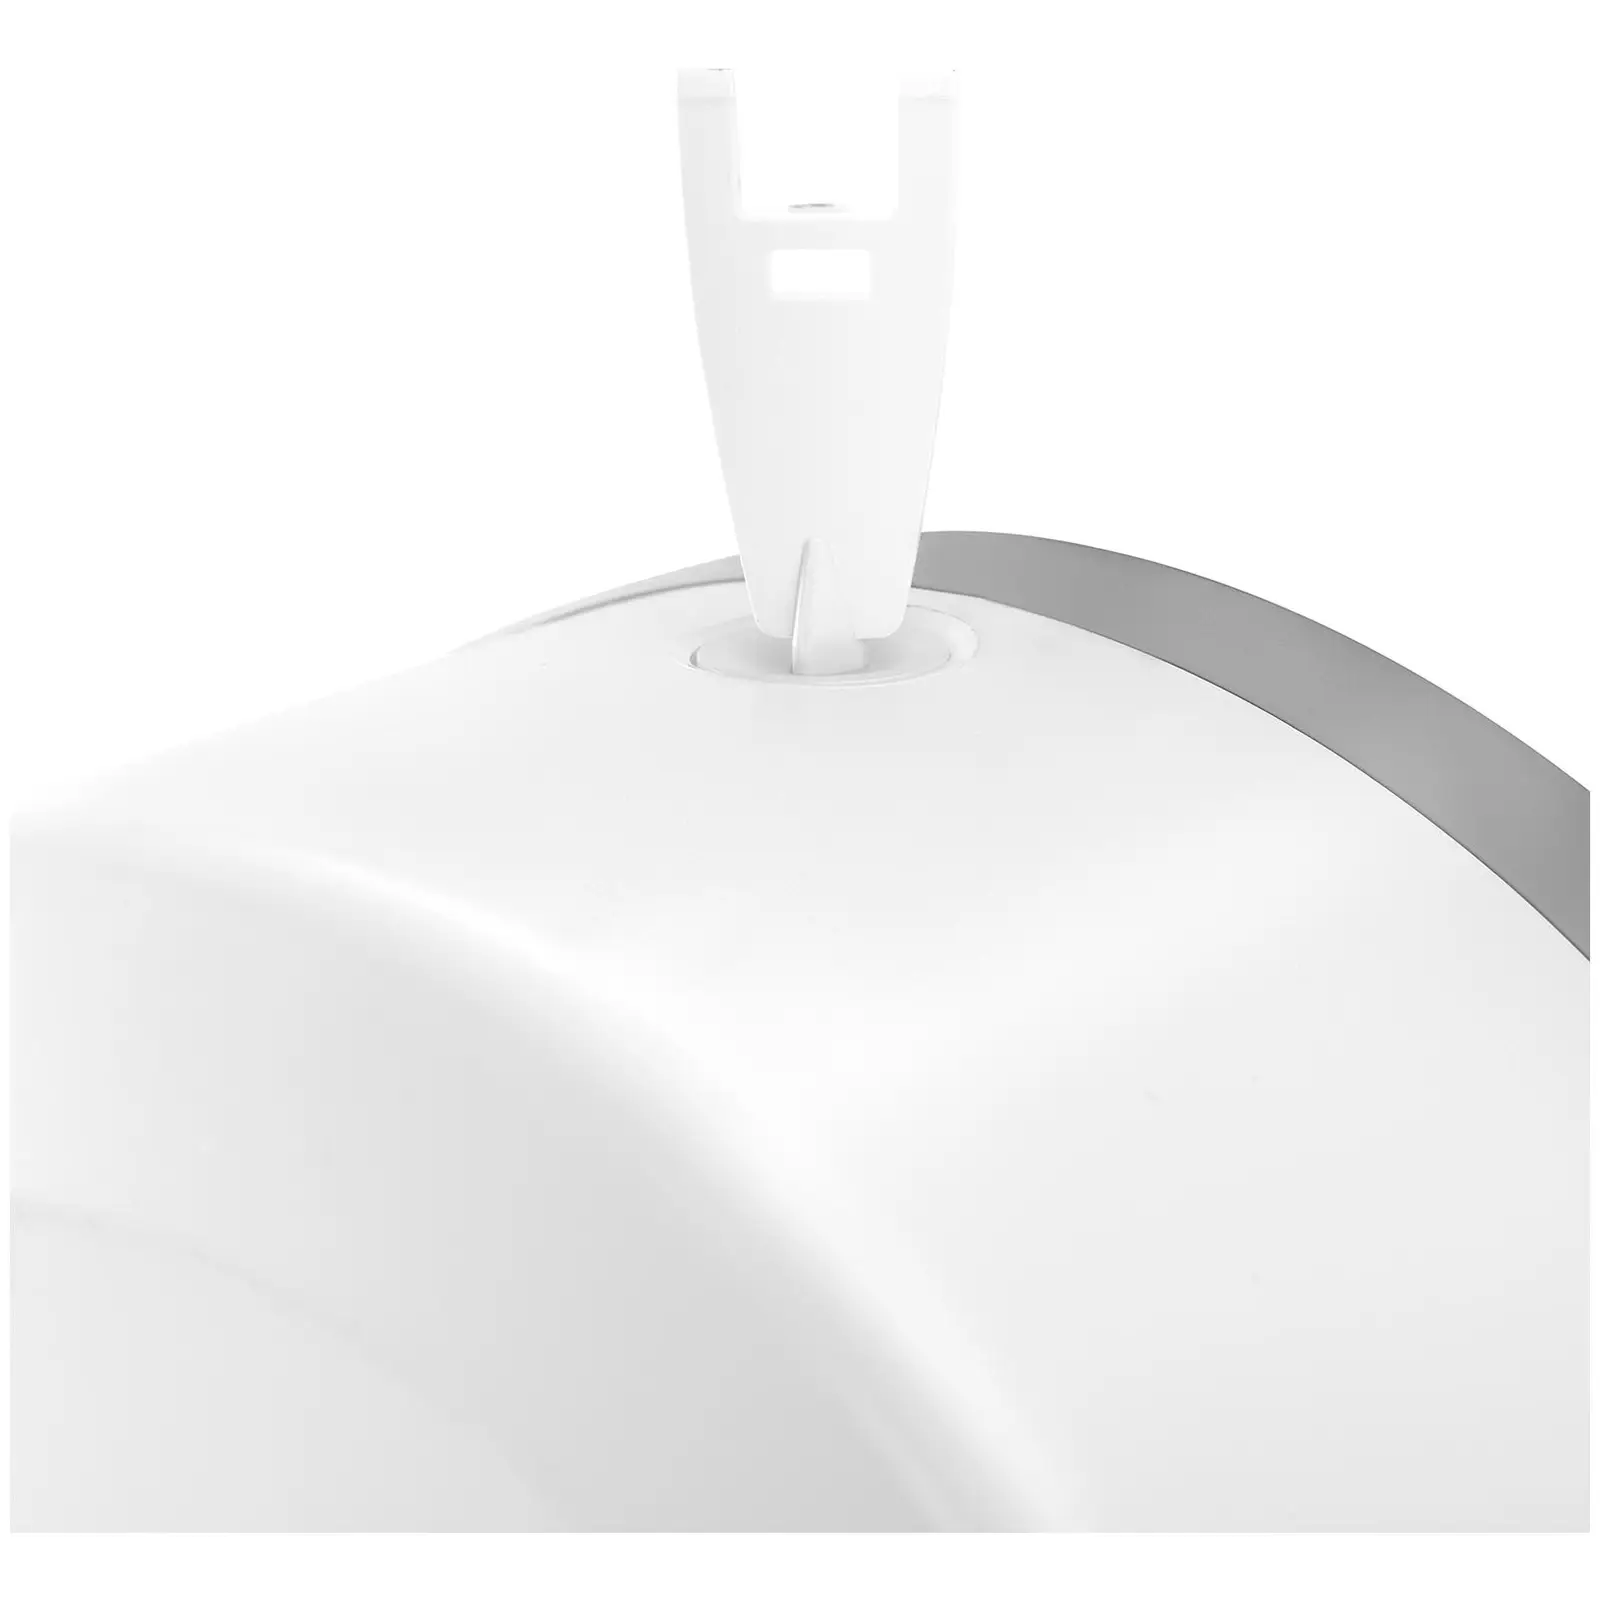 Commercial Toilet Paper Holder - for jumbo rolls - ABS